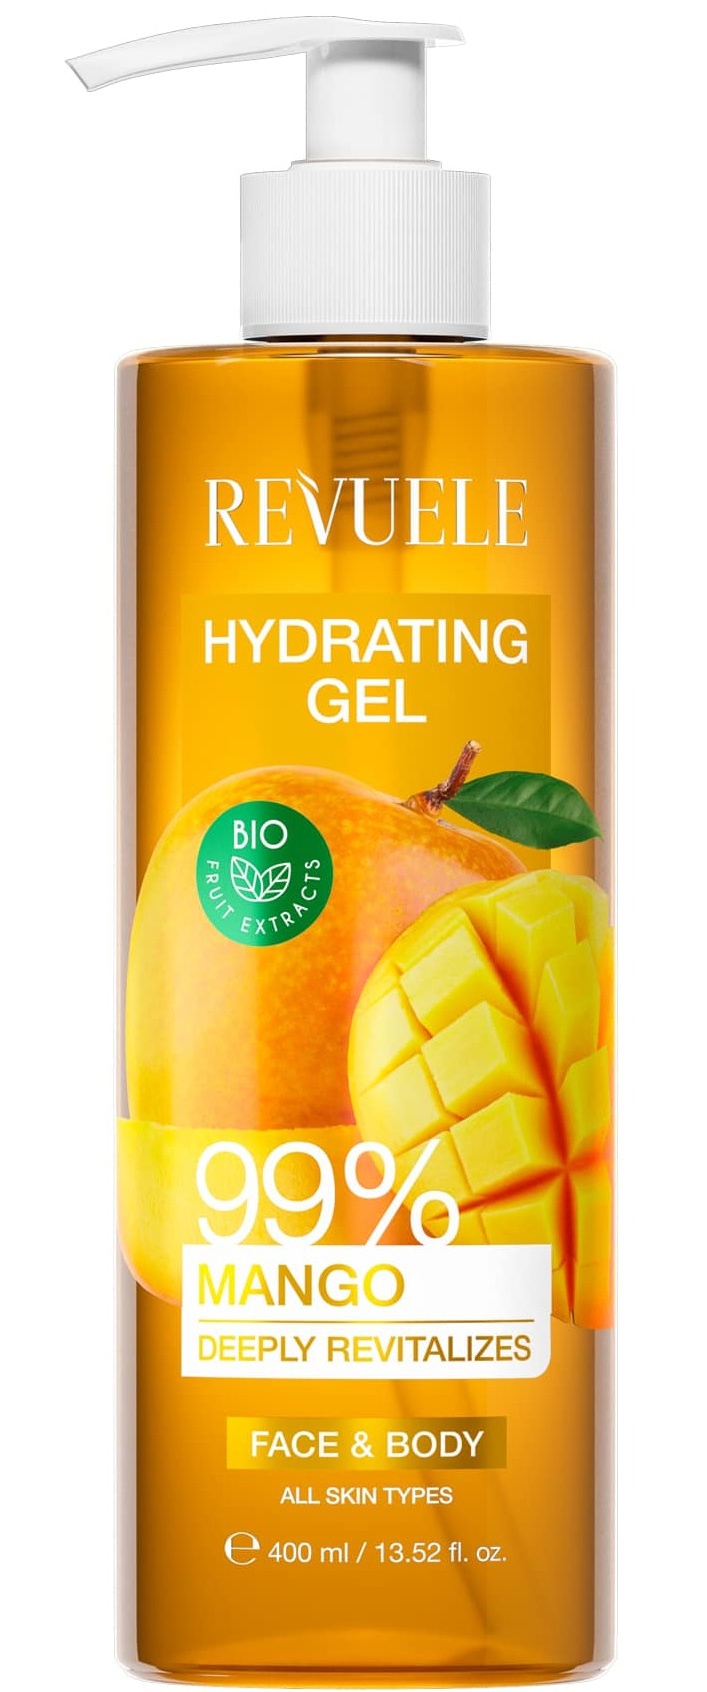 Revuele Hydrating Gel Mango 99%